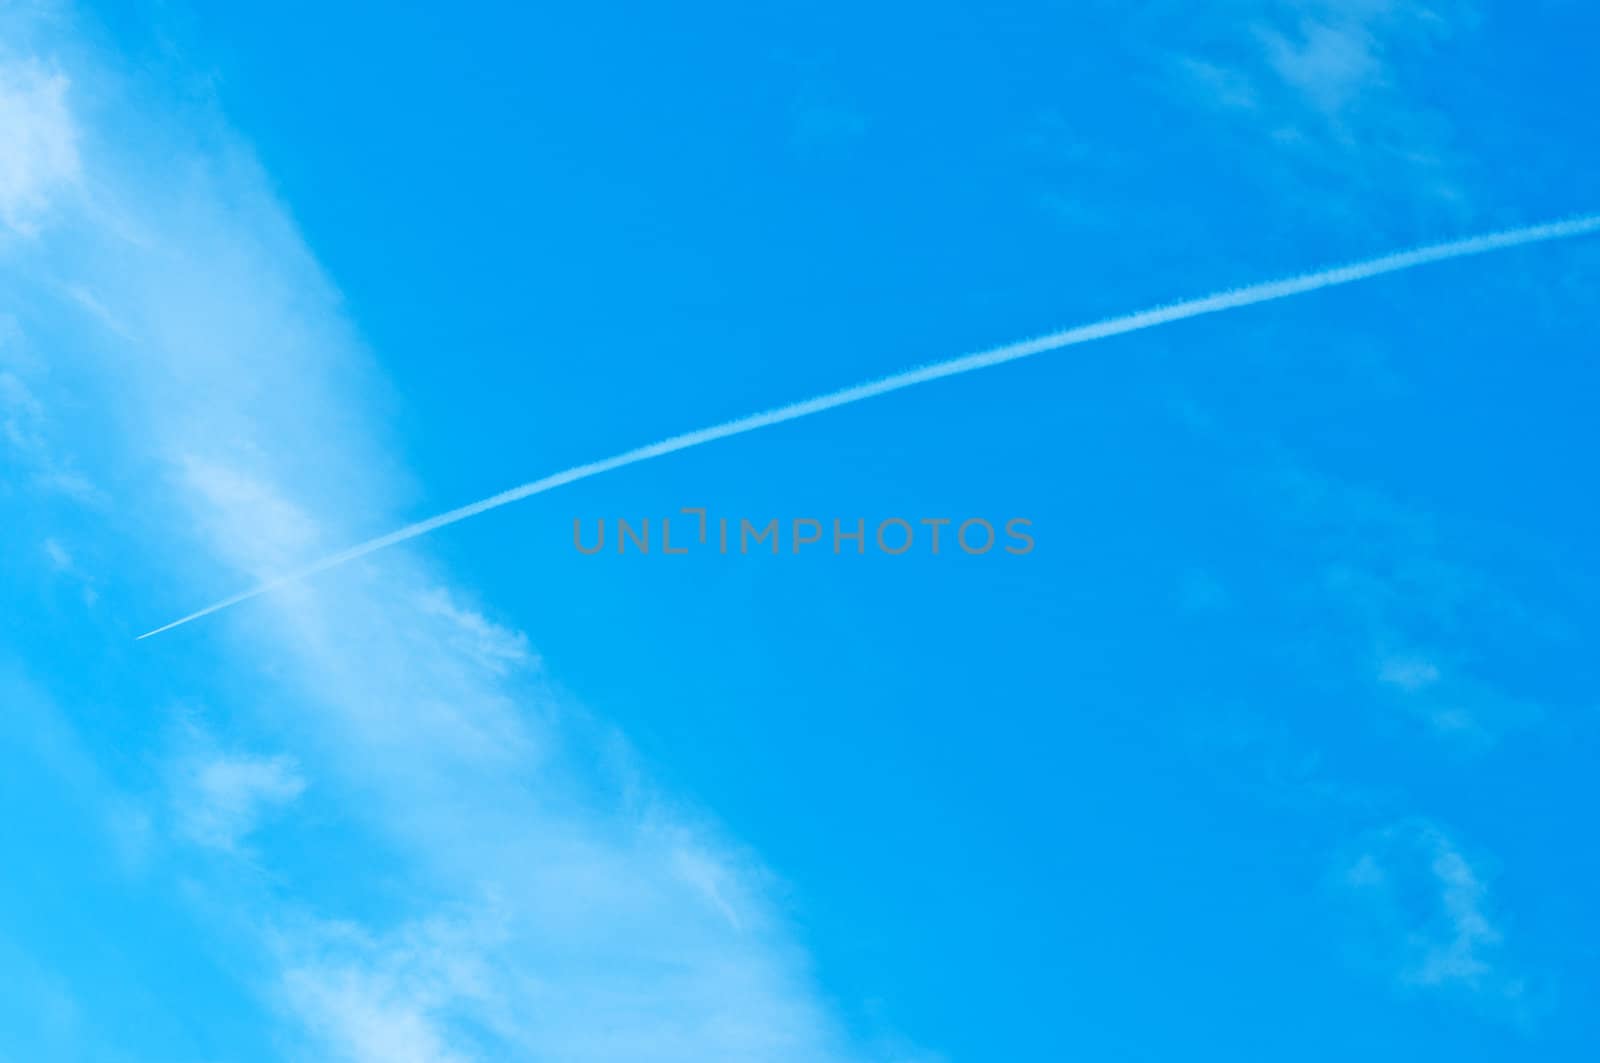 Airoplane on a cloudy blue sky by Nanisimova